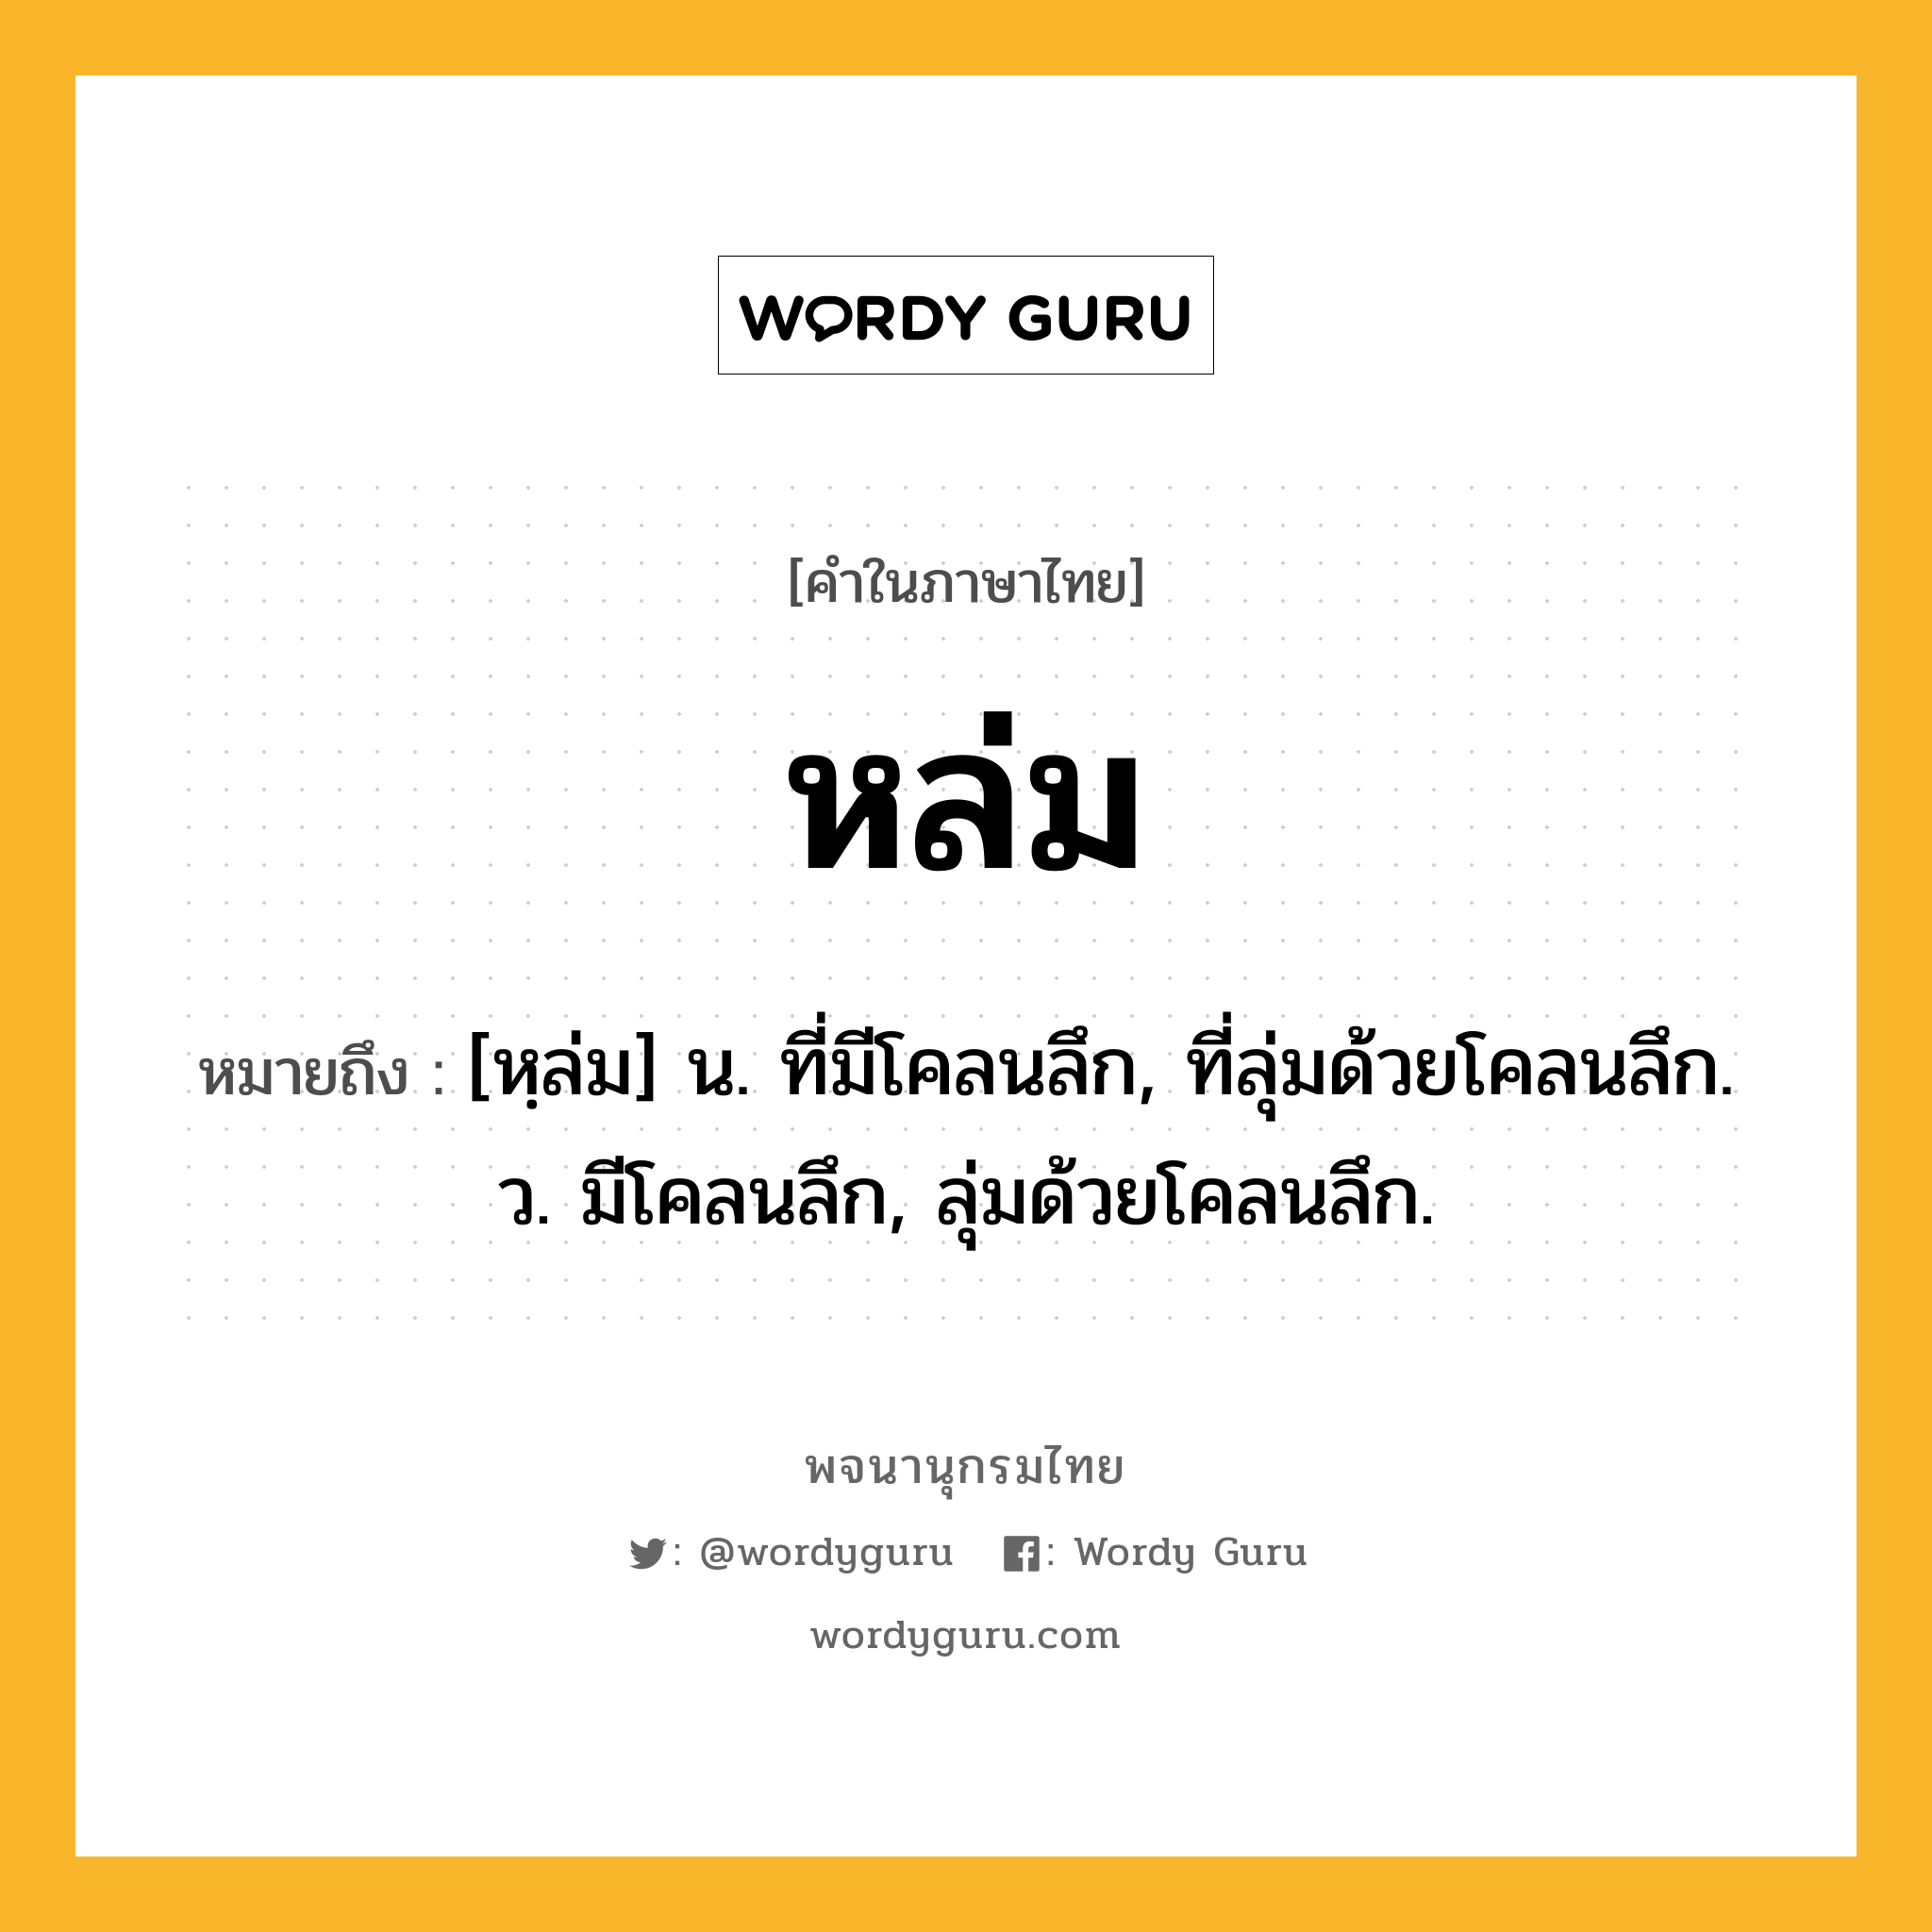 หล่ม หมายถึงอะไร?, คำในภาษาไทย หล่ม หมายถึง [หฺล่ม] น. ที่มีโคลนลึก, ที่ลุ่มด้วยโคลนลึก. ว. มีโคลนลึก, ลุ่มด้วยโคลนลึก.